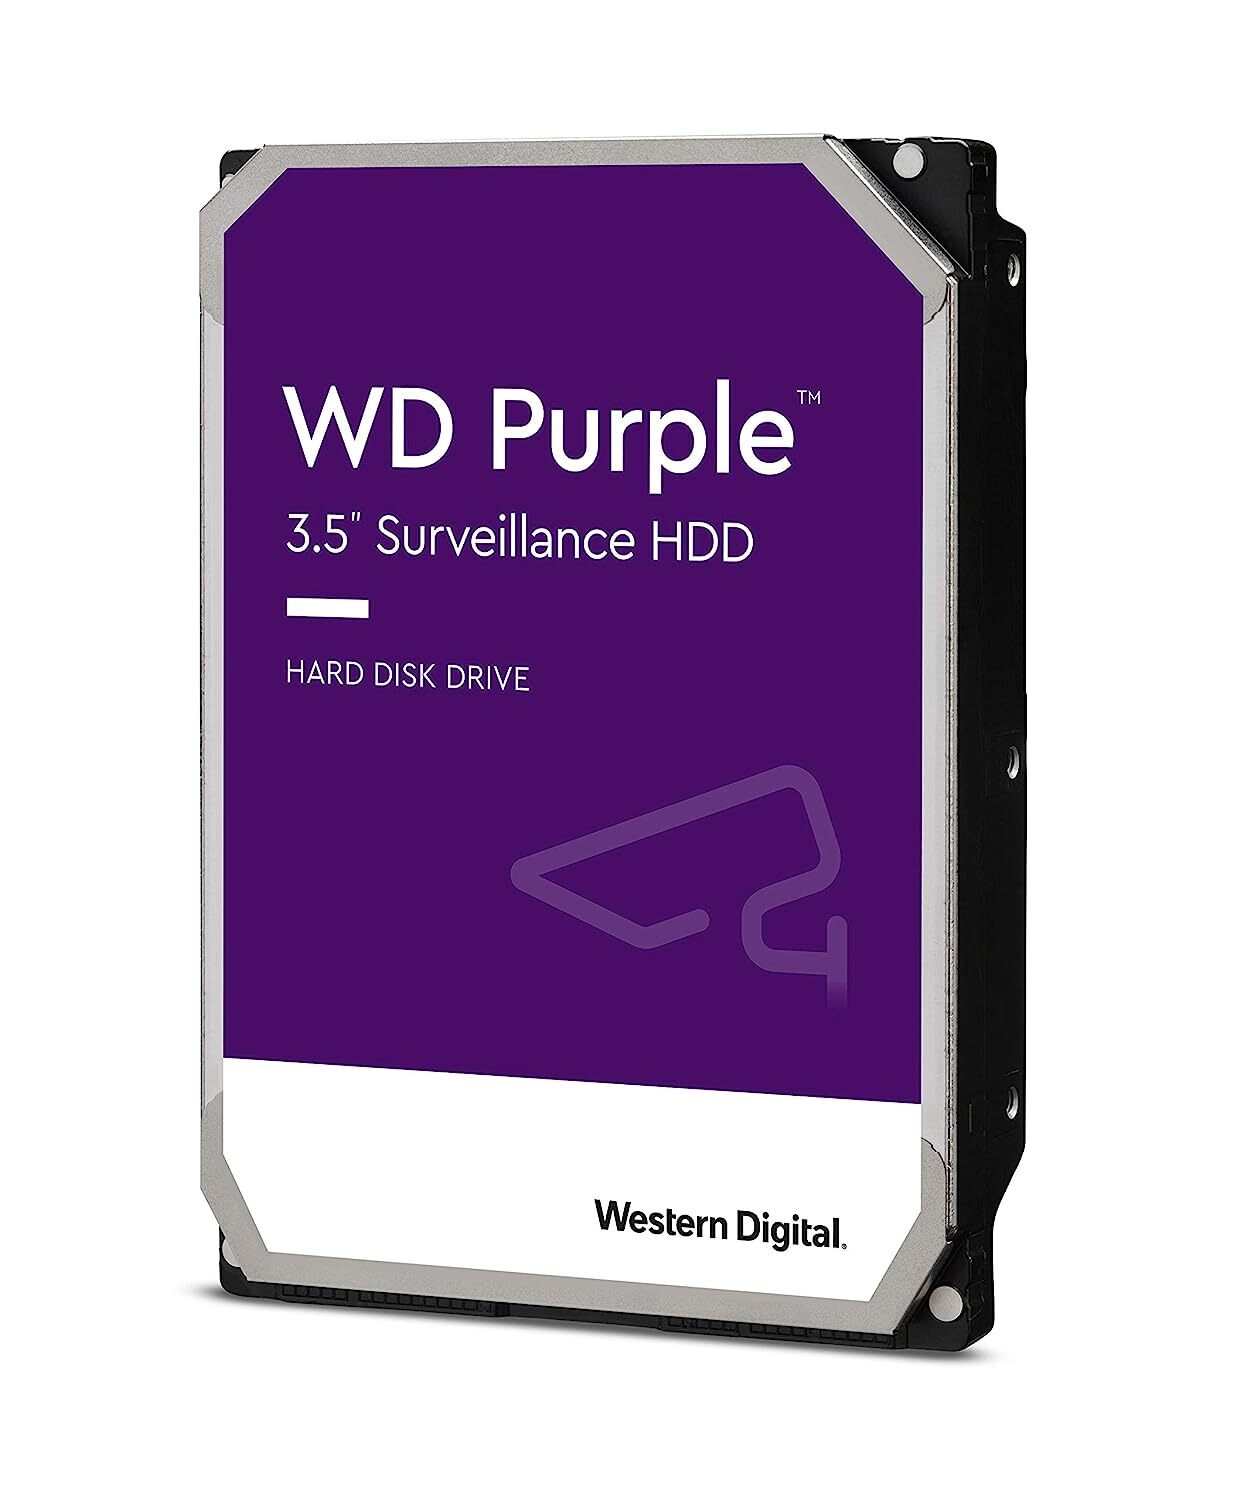 WD Purple 14TB Surveillance Internal Hard Drive - 7200 RPM Class, SATA 6 Gb/s, 512 MB Cache, 3.5" - WD140PURZ